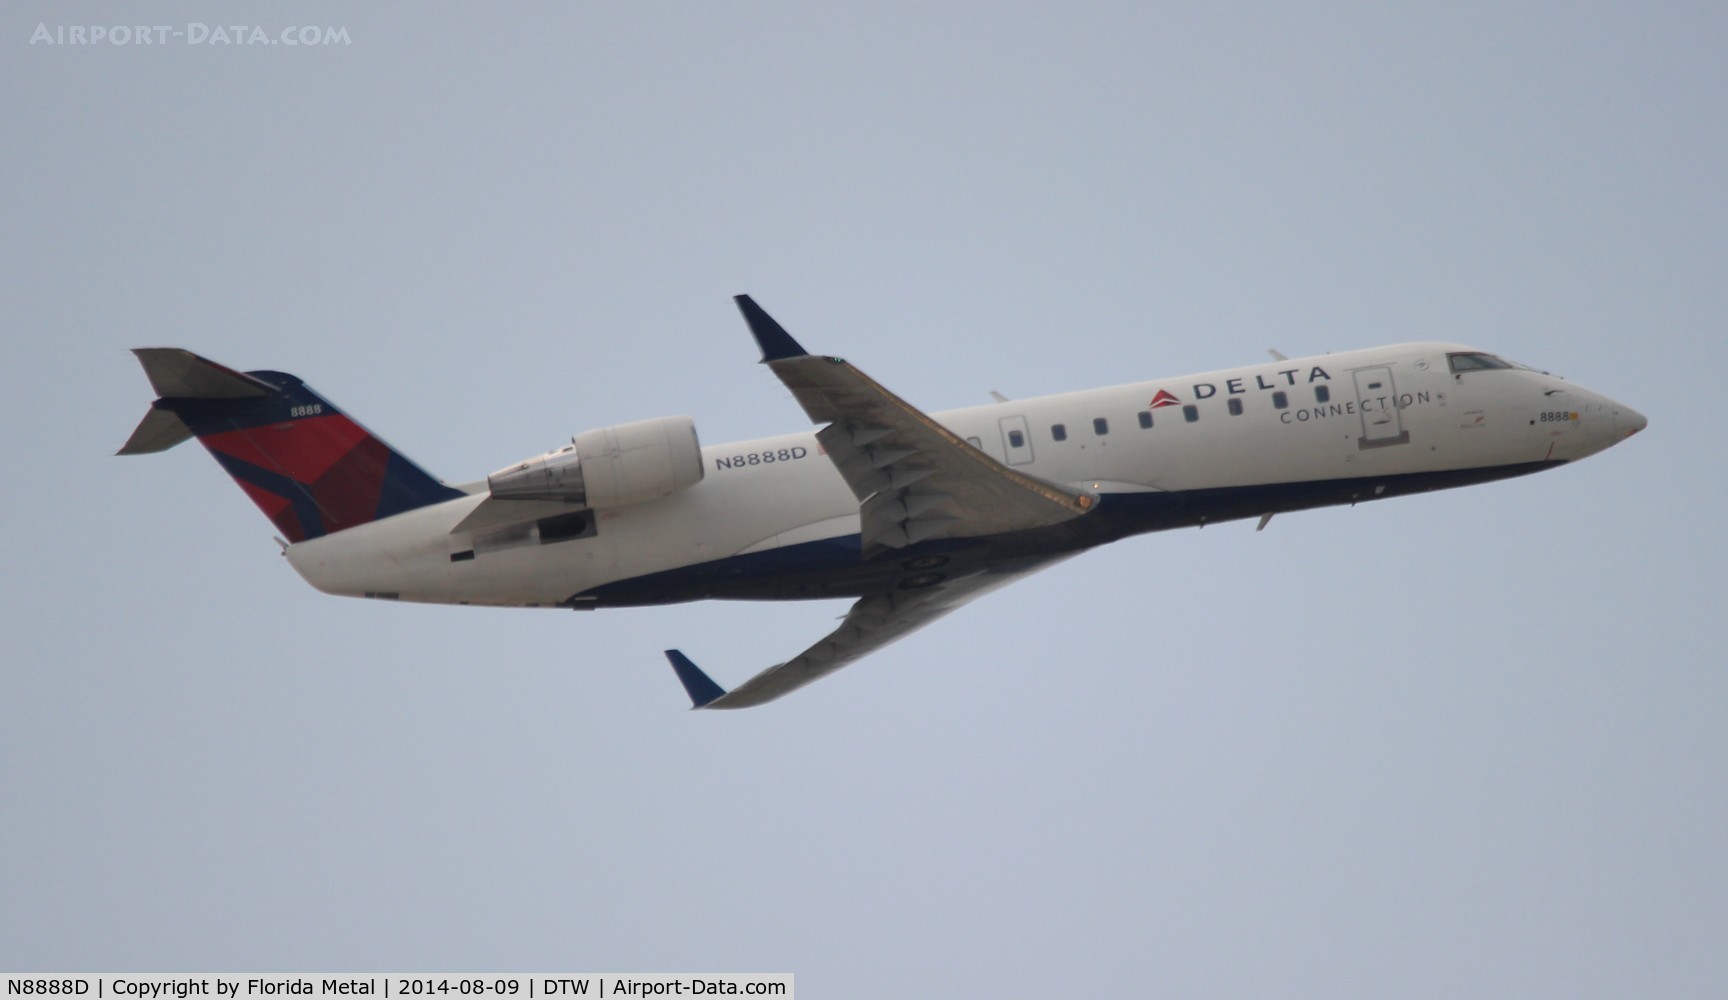 N8888D, 2003 Bombardier CRJ-200 (CL-600-2B19) C/N 7888, Delta Connection